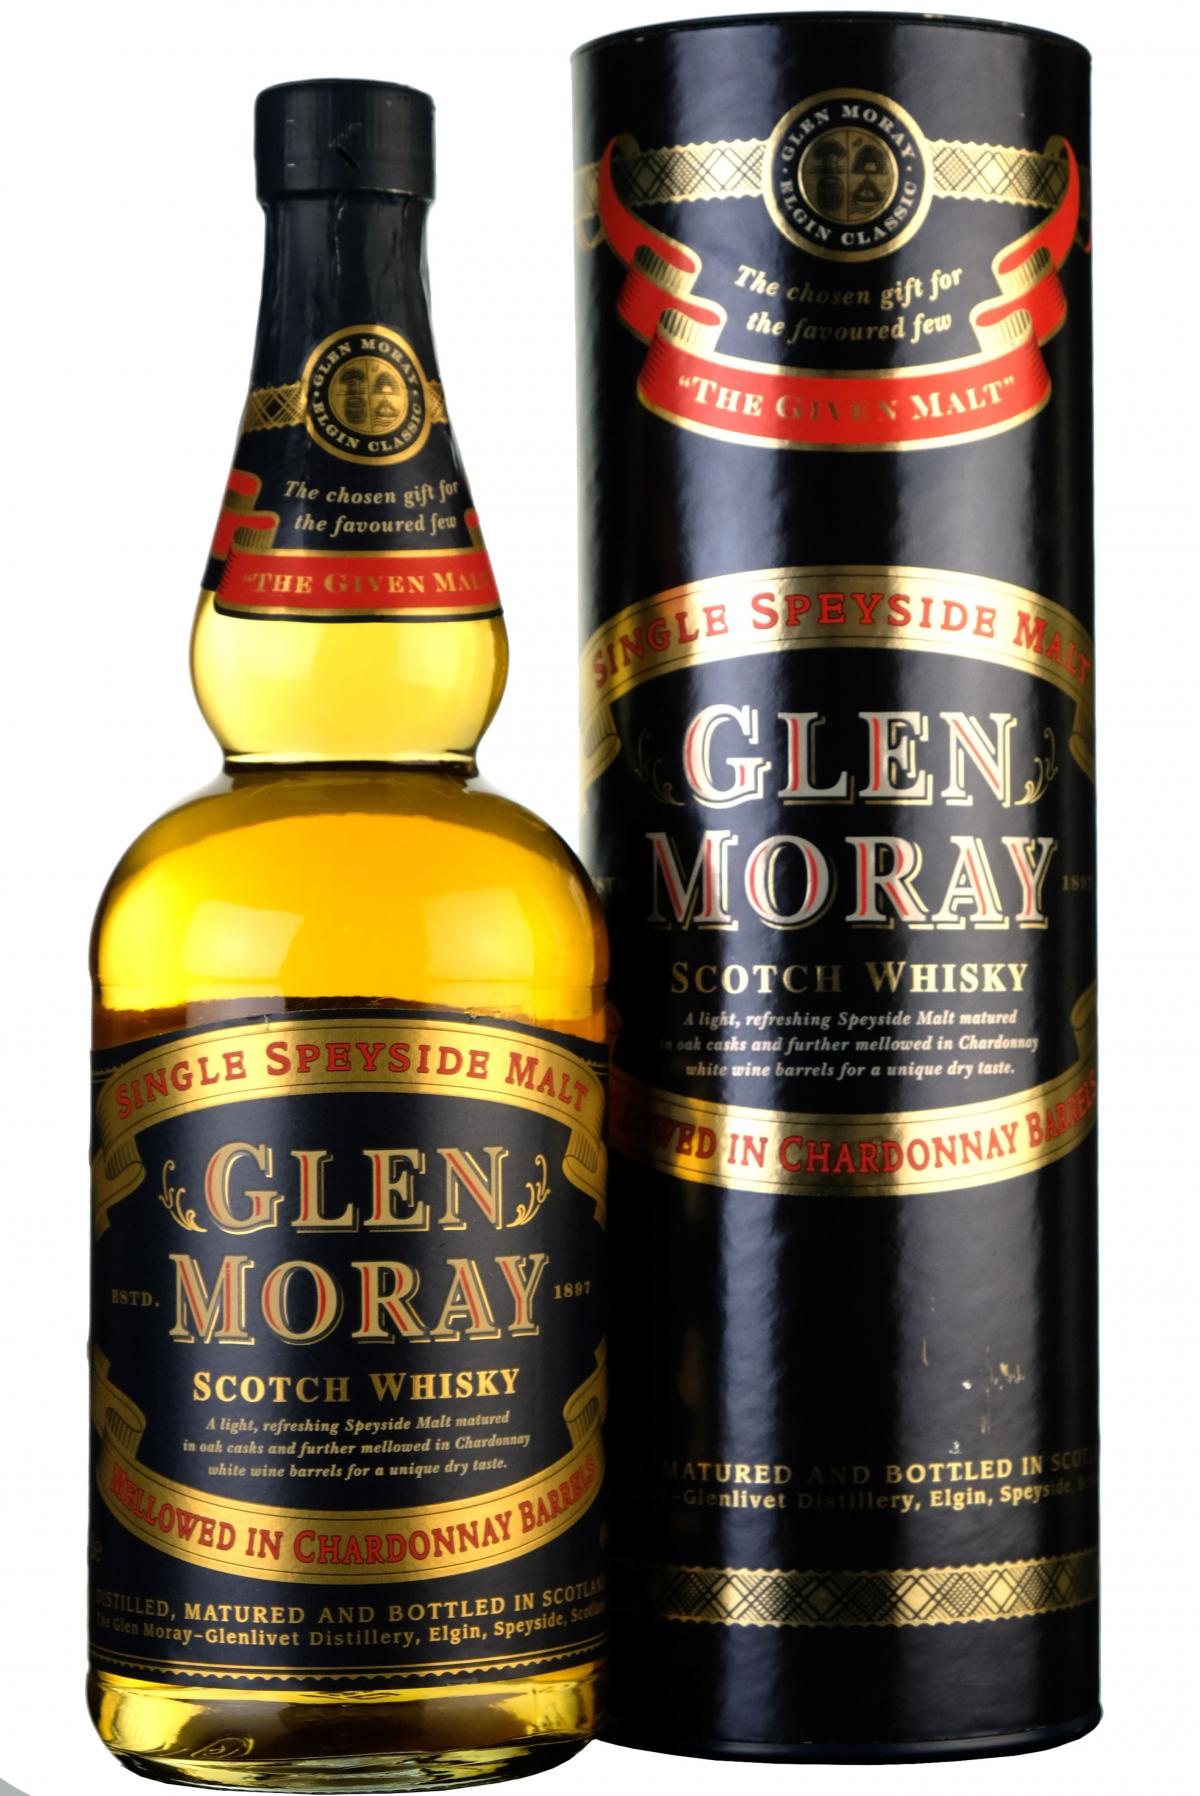 glen moray single malt scotch whisky